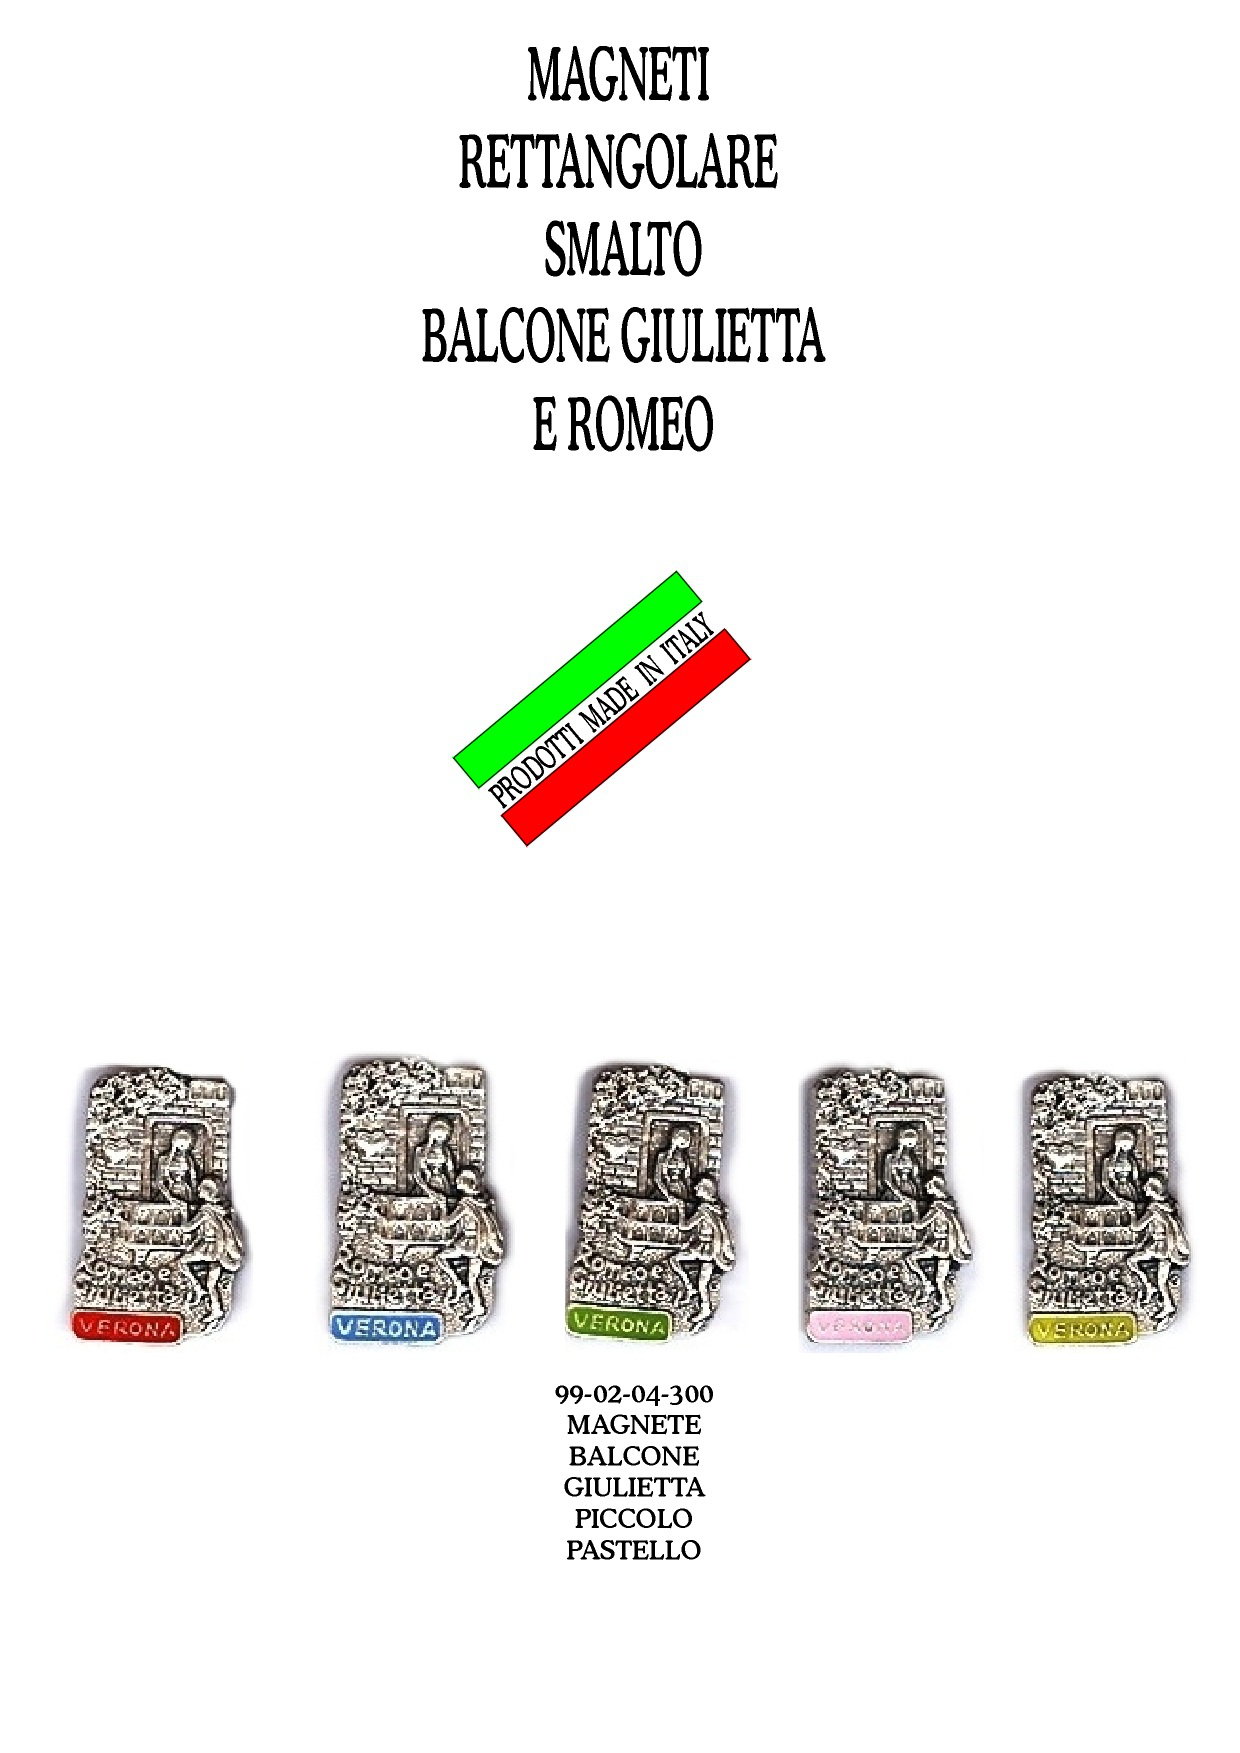 99-02-04-0300 Magneti Verona Balcone Arg. Smalto Assortiti CONFEZIONI da n.10 Pz